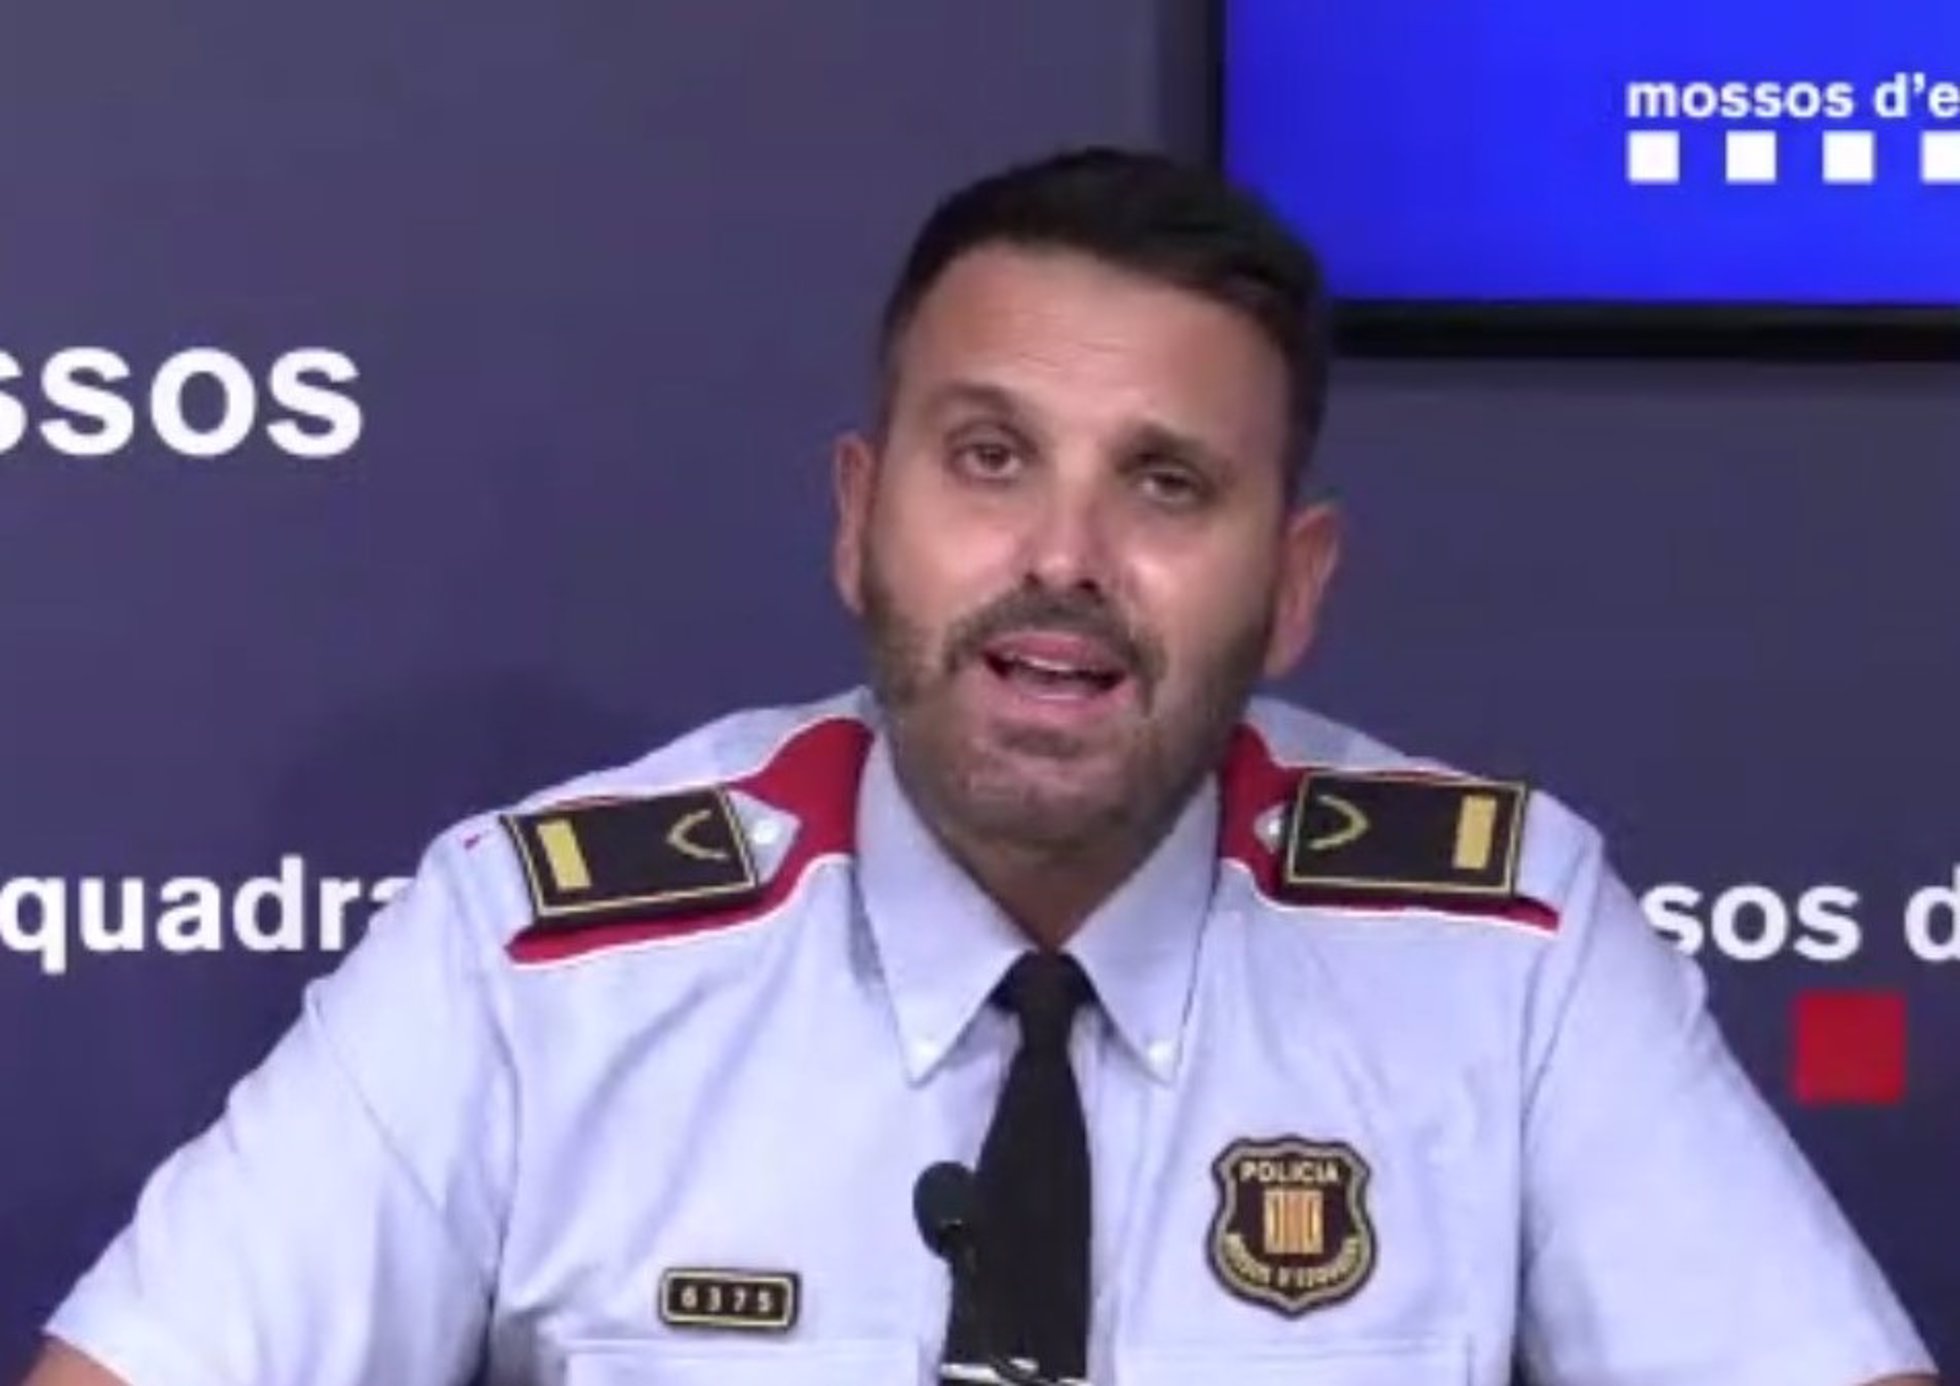 El jefe de la División de Investigación Criminal de los Mossos d'Esquadra de Barcelona, el inspector Josep Naharro